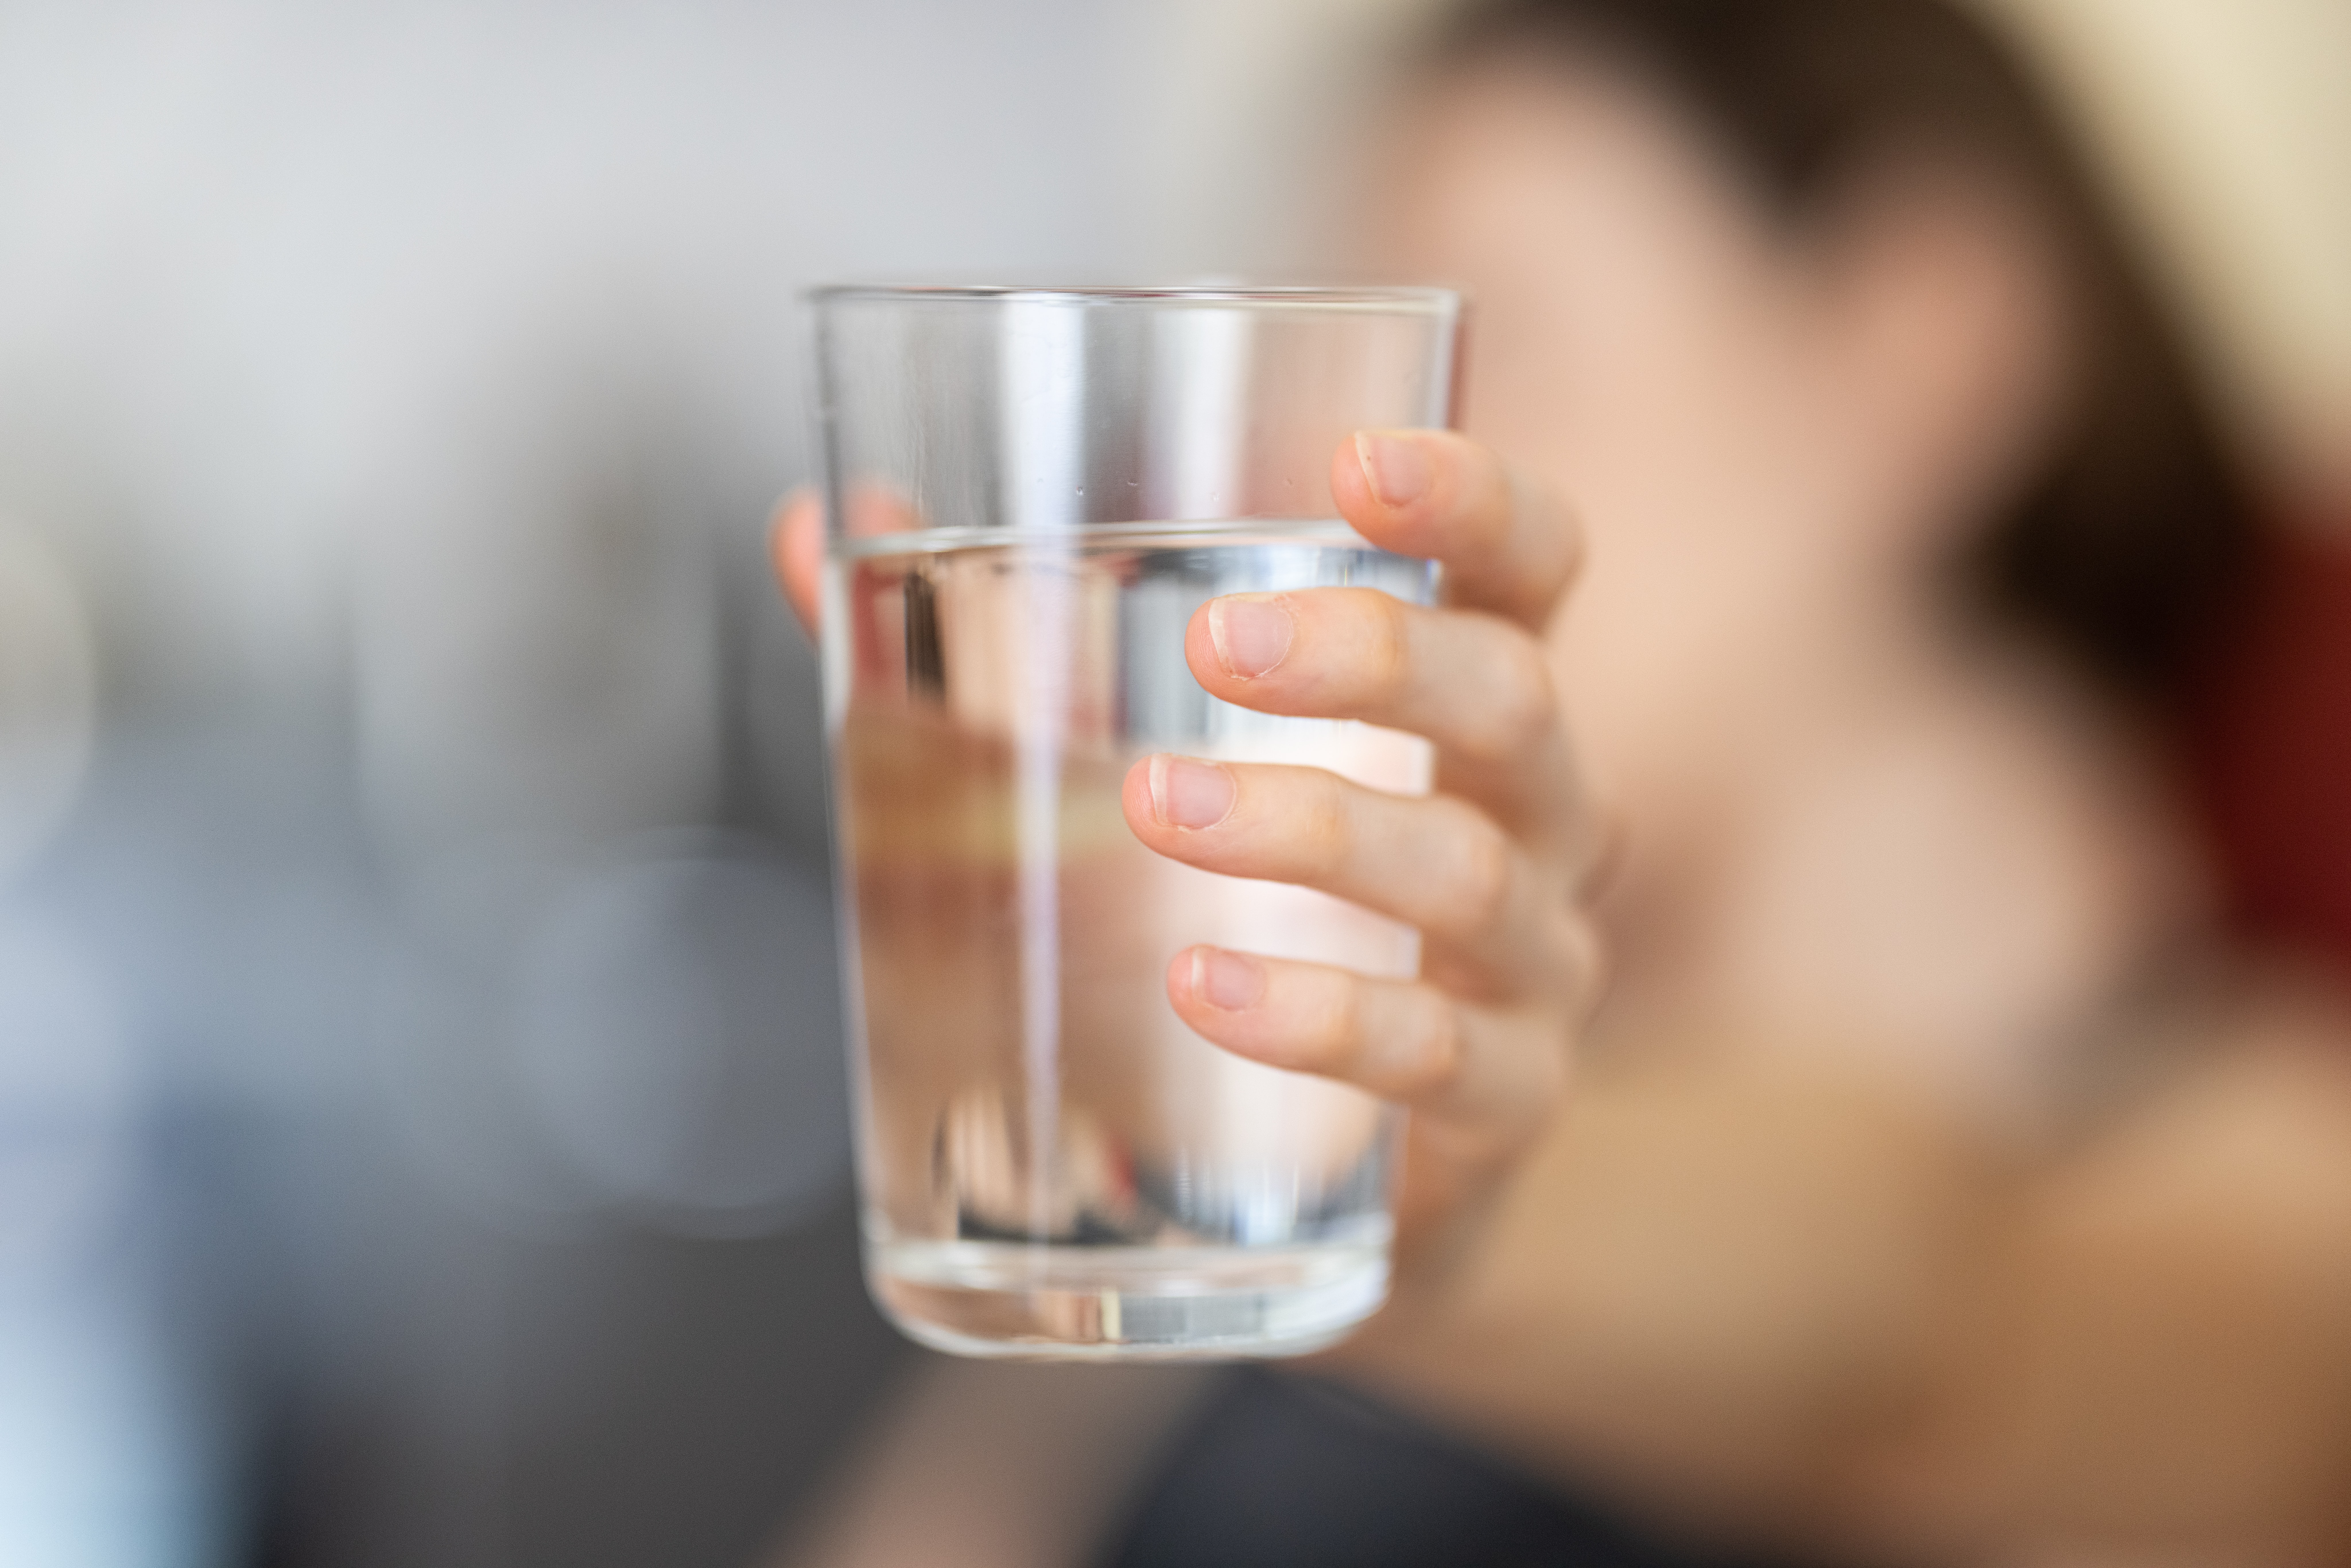 POSLEDNJI REZULTATI Voda sa Mareze ispravna za piće